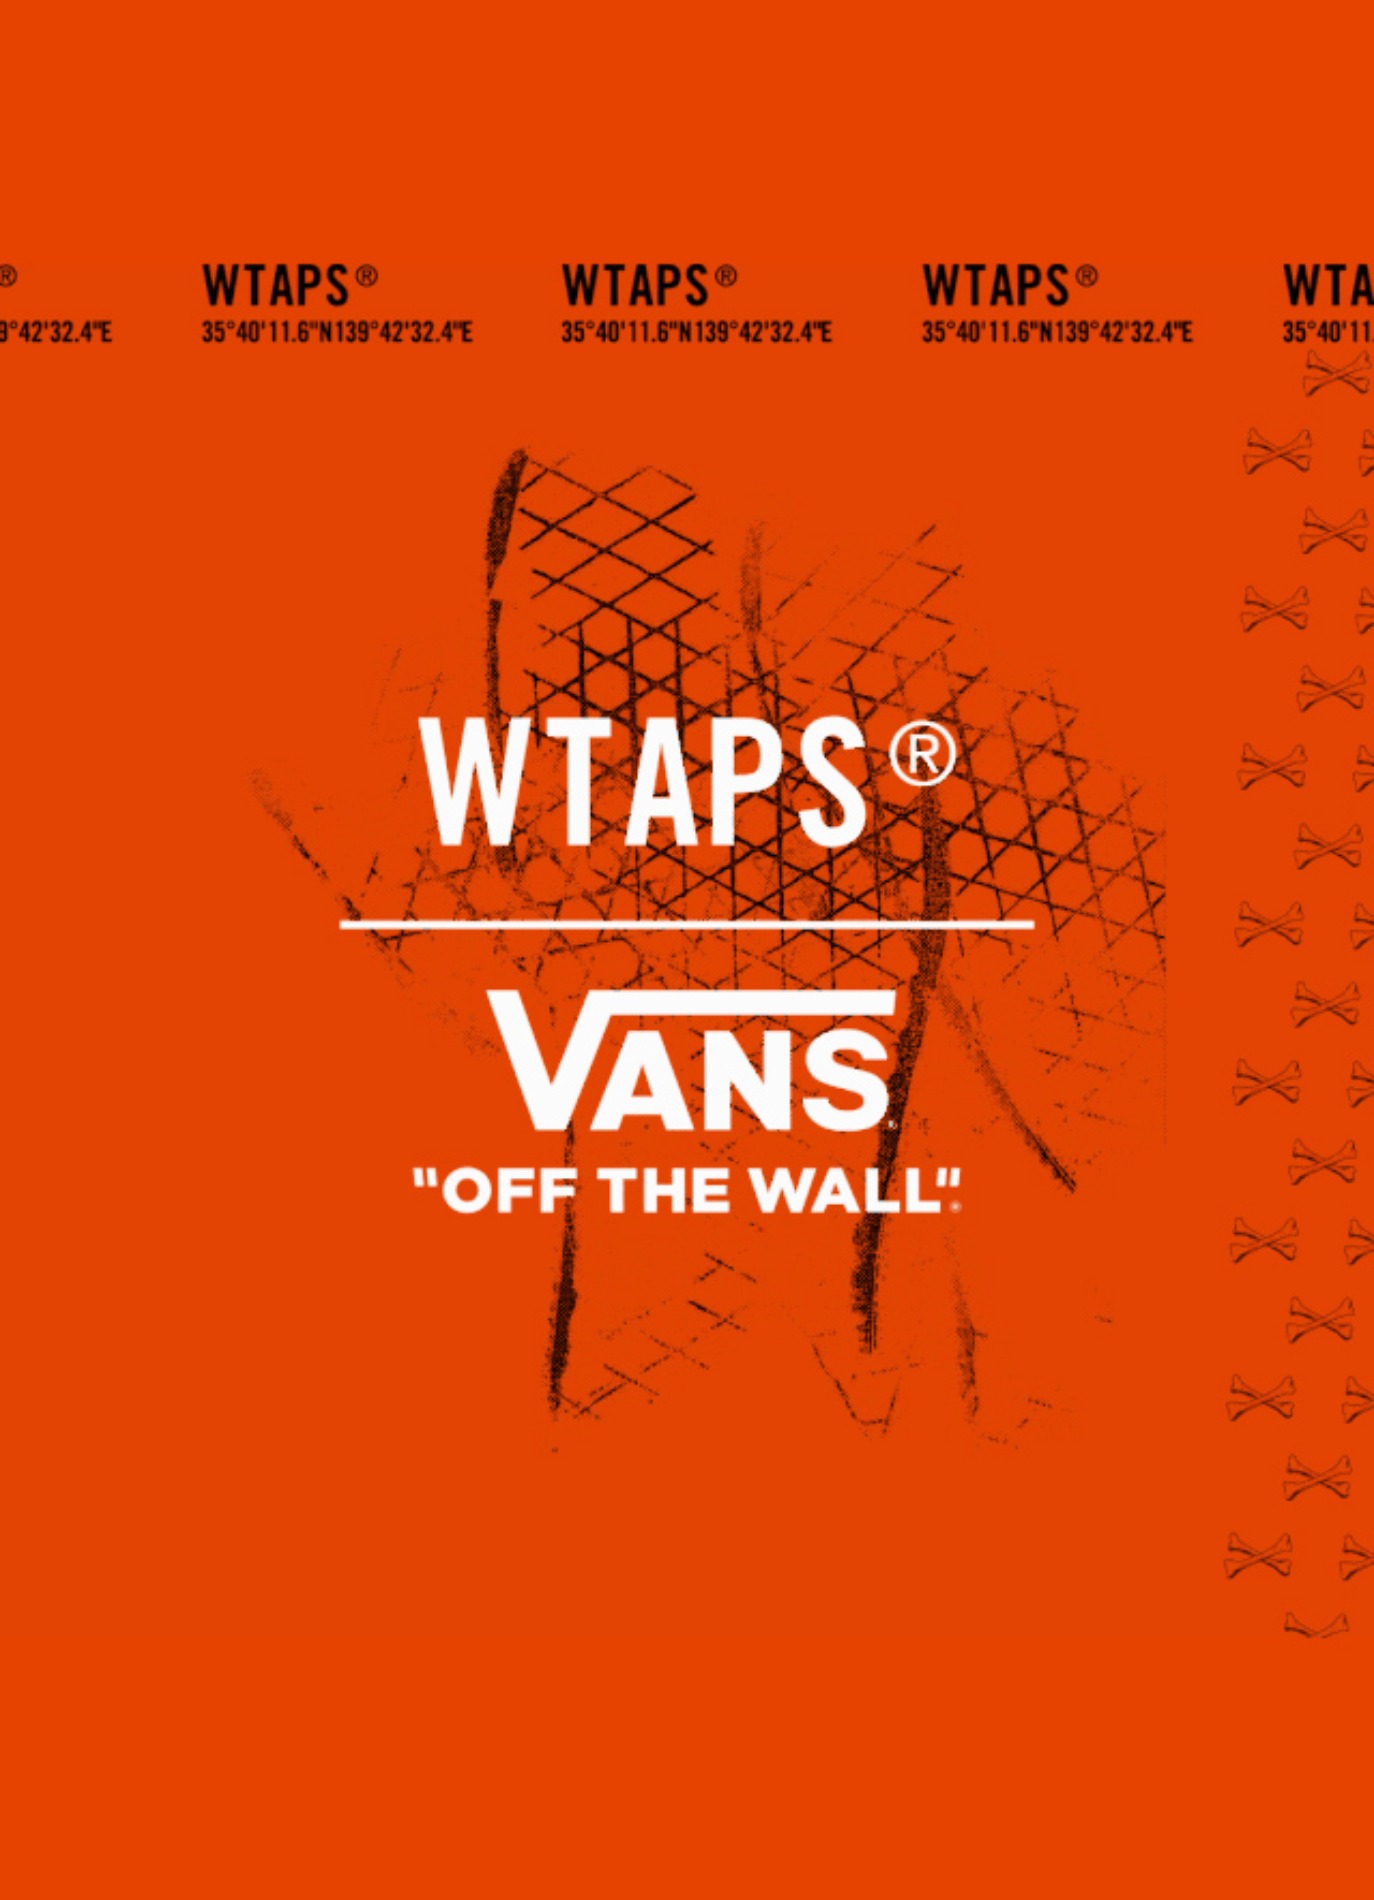 Vault by Vans x WTAPS